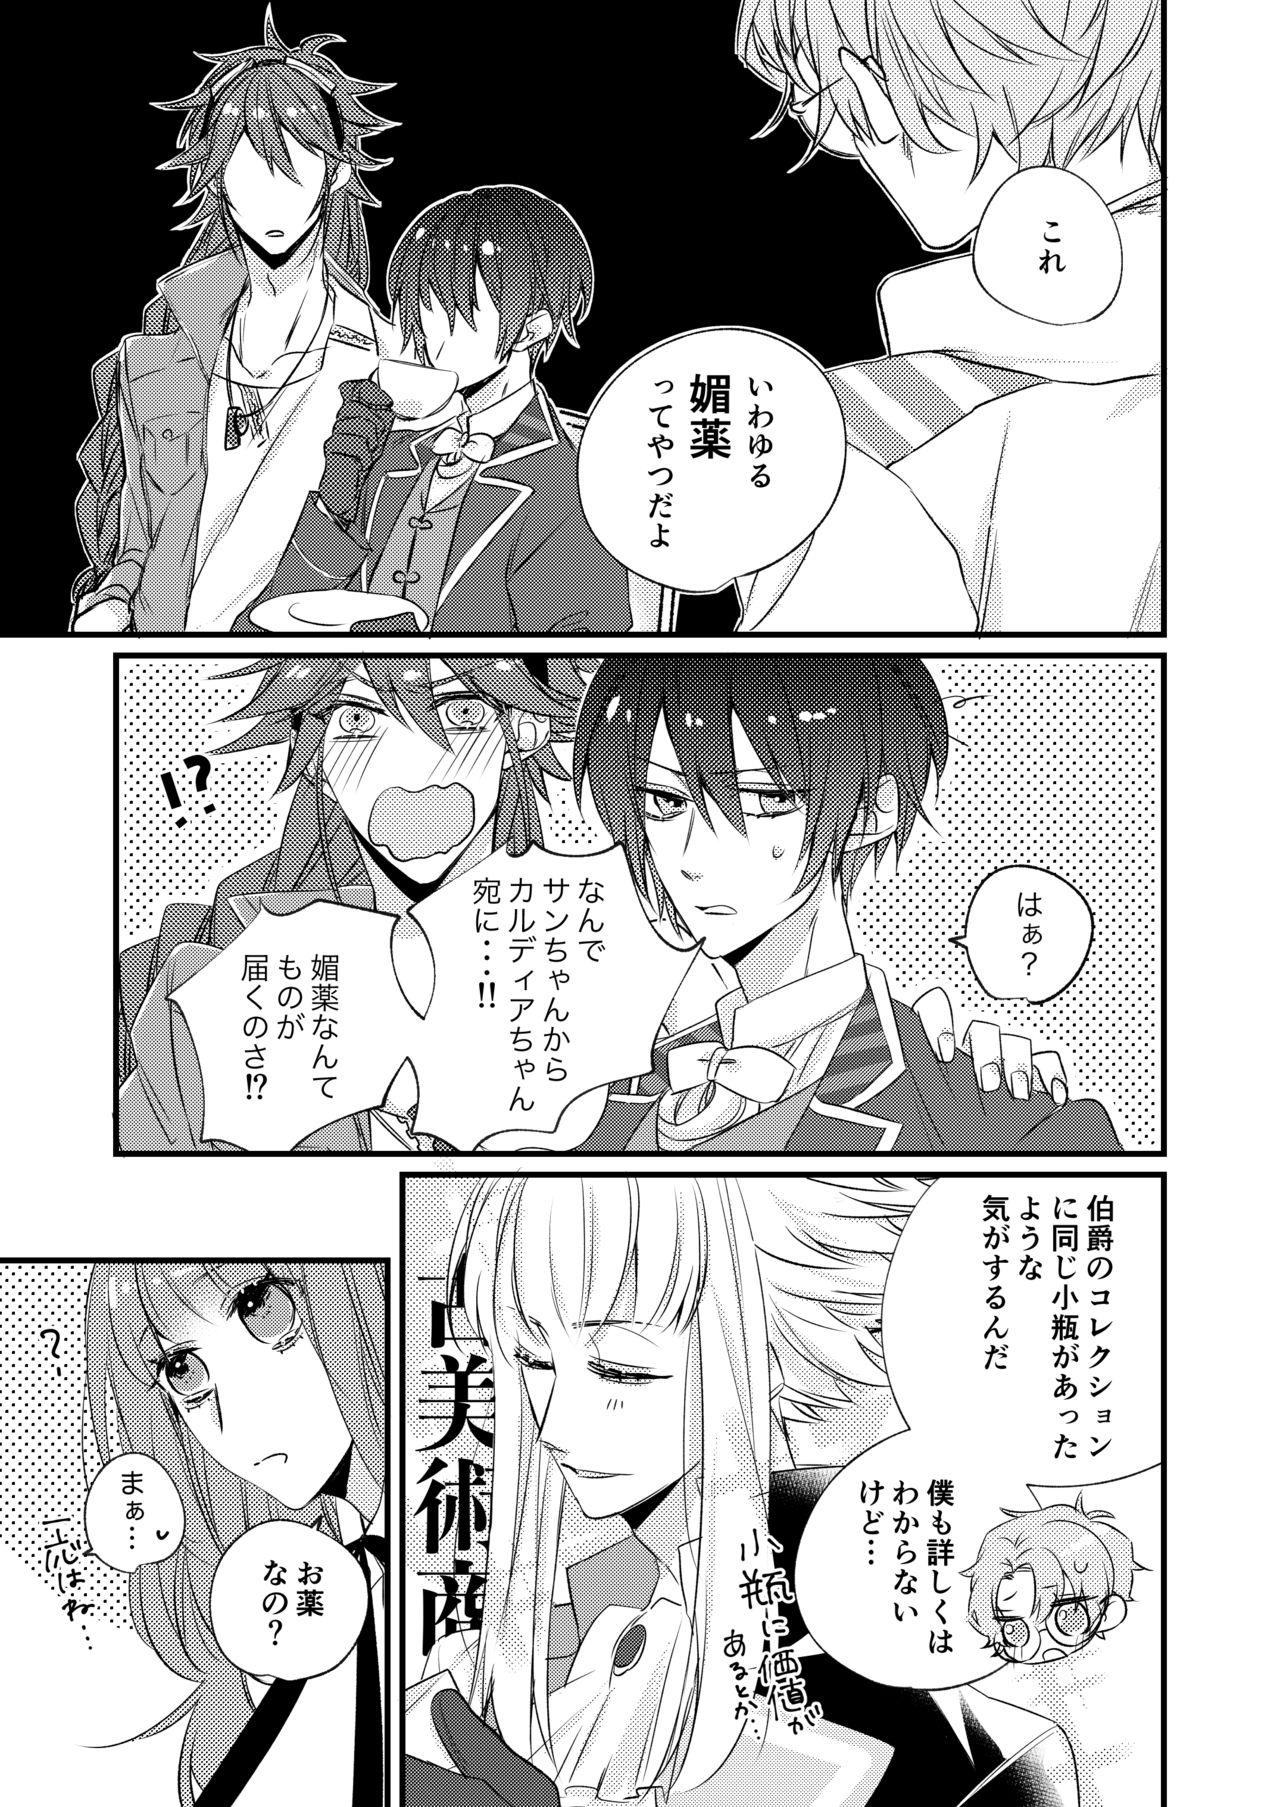 No Condom 熱におぼれる - Code realize sousei no himegimi Boyfriend - Page 4